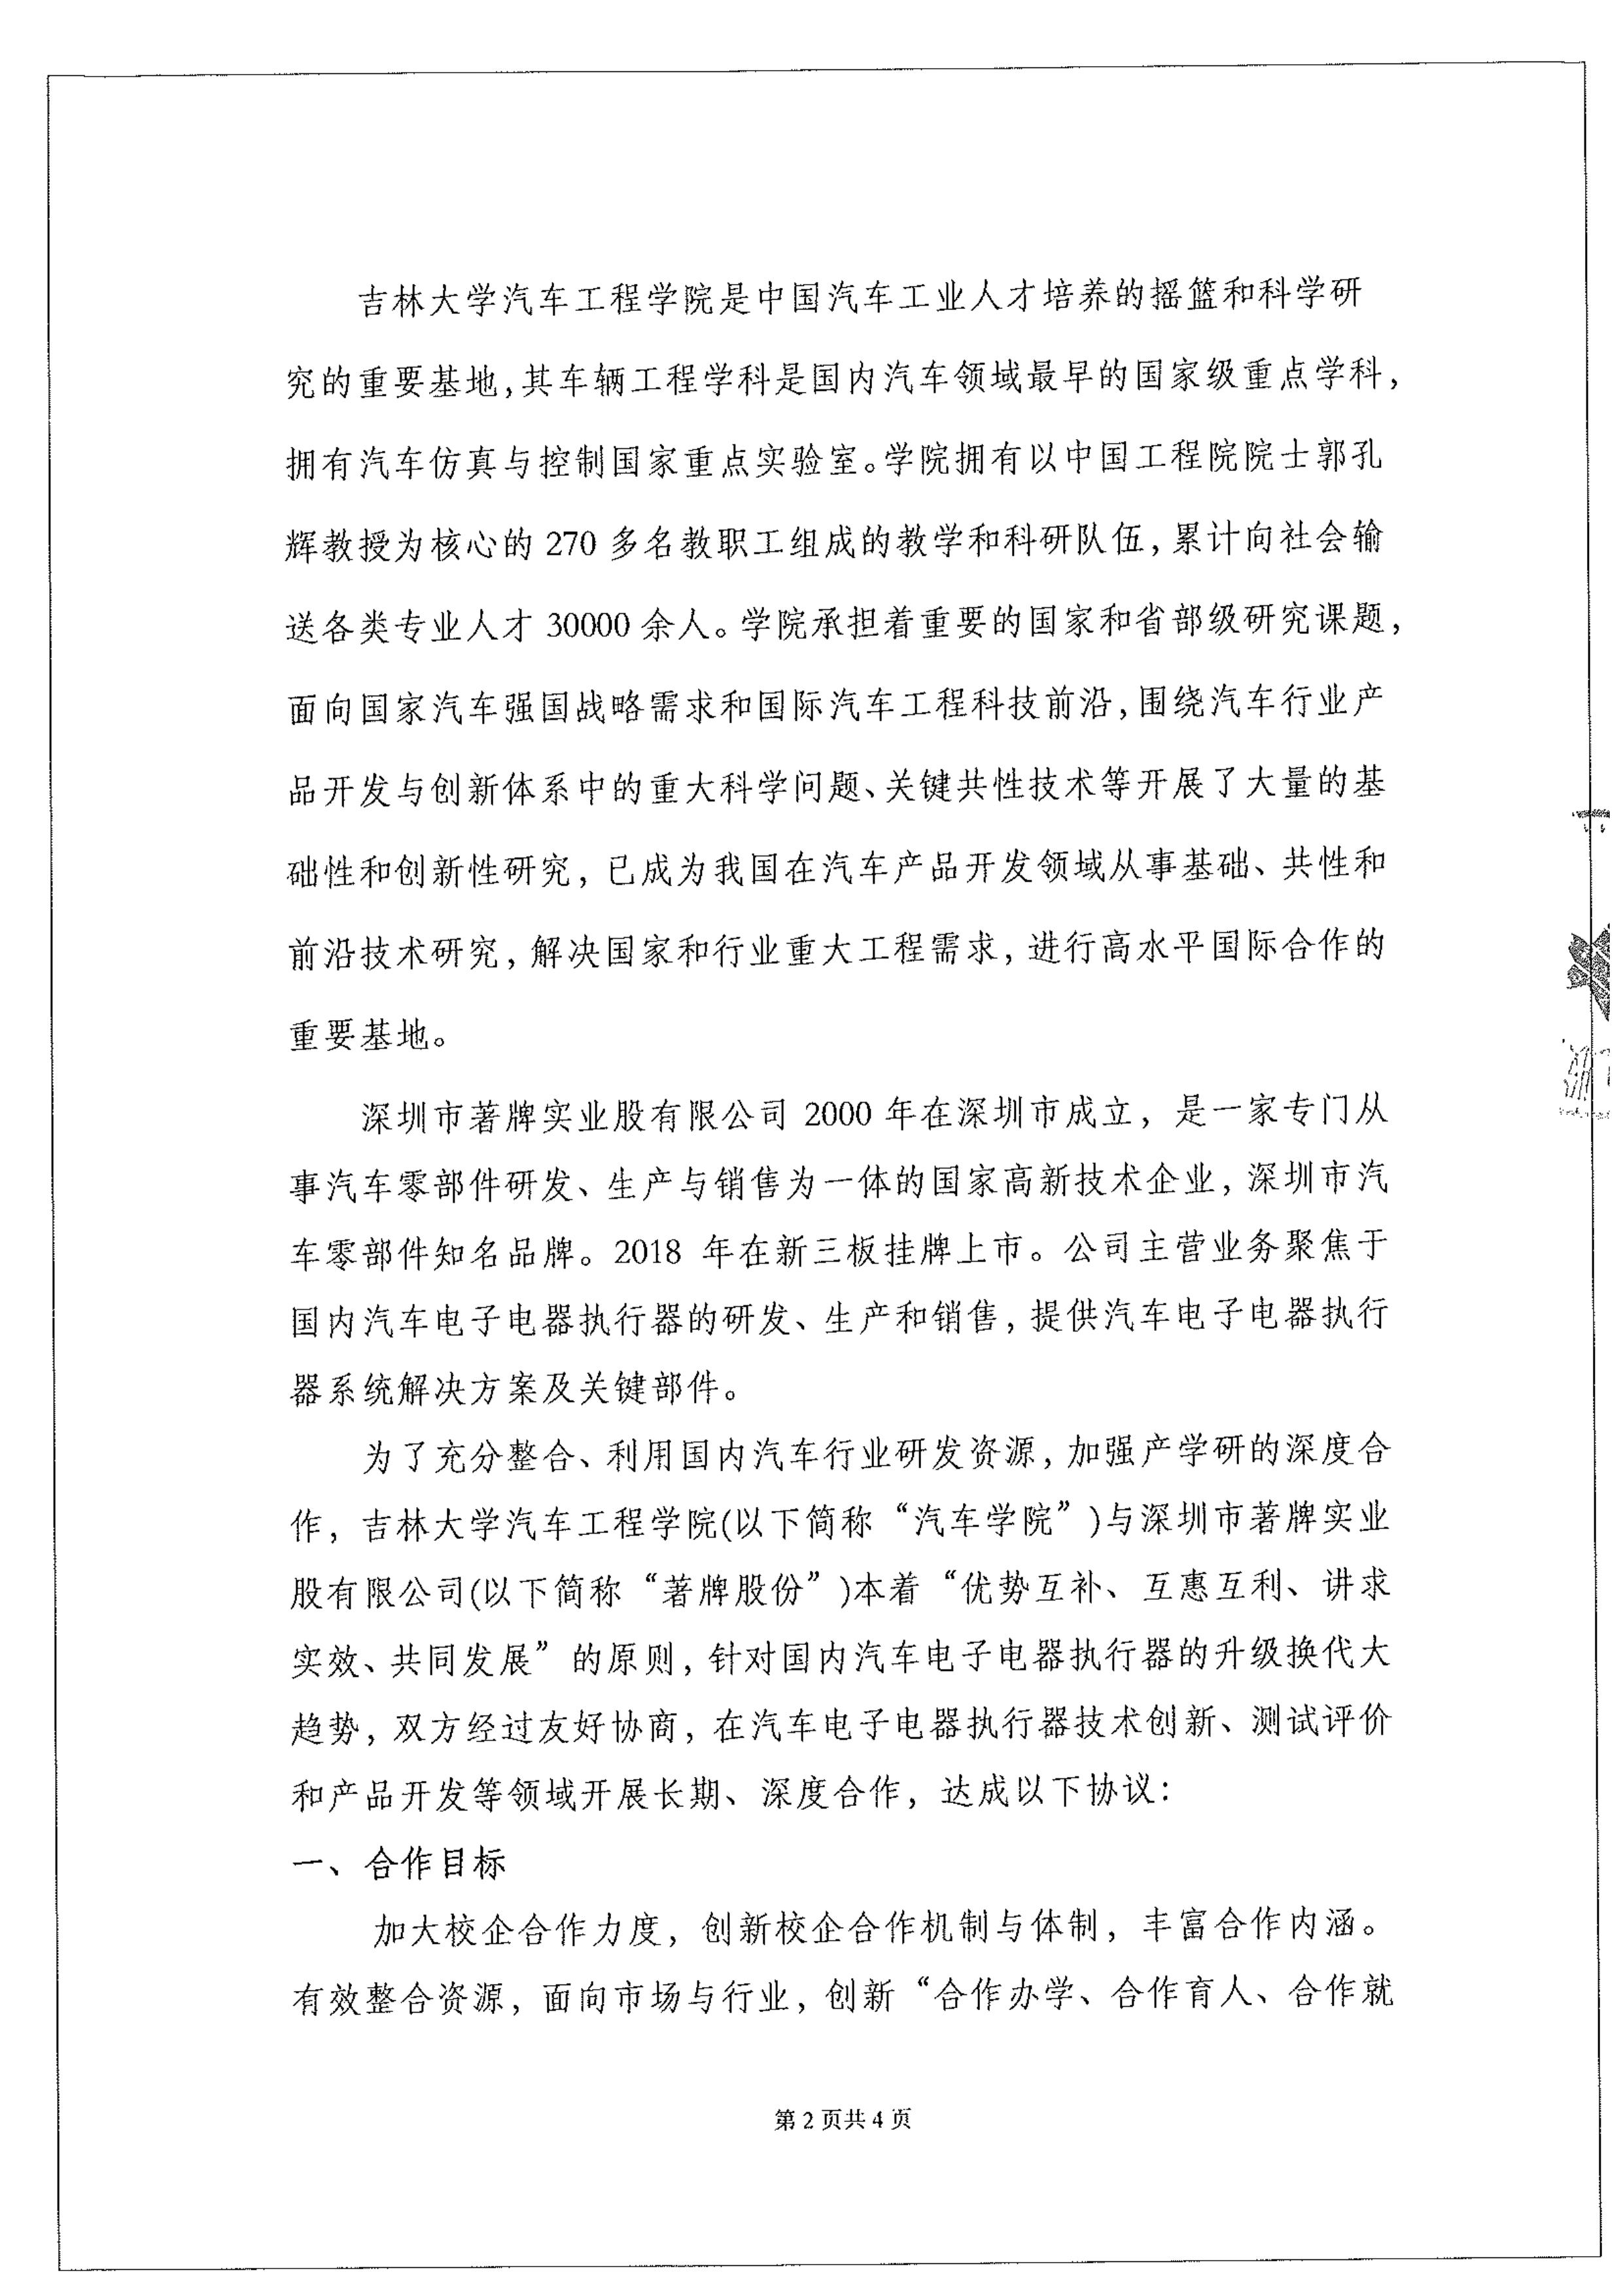 2019年12月15日，深圳市著牌实业股份有限公司与吉林大学工程学院签订战略合作协议。